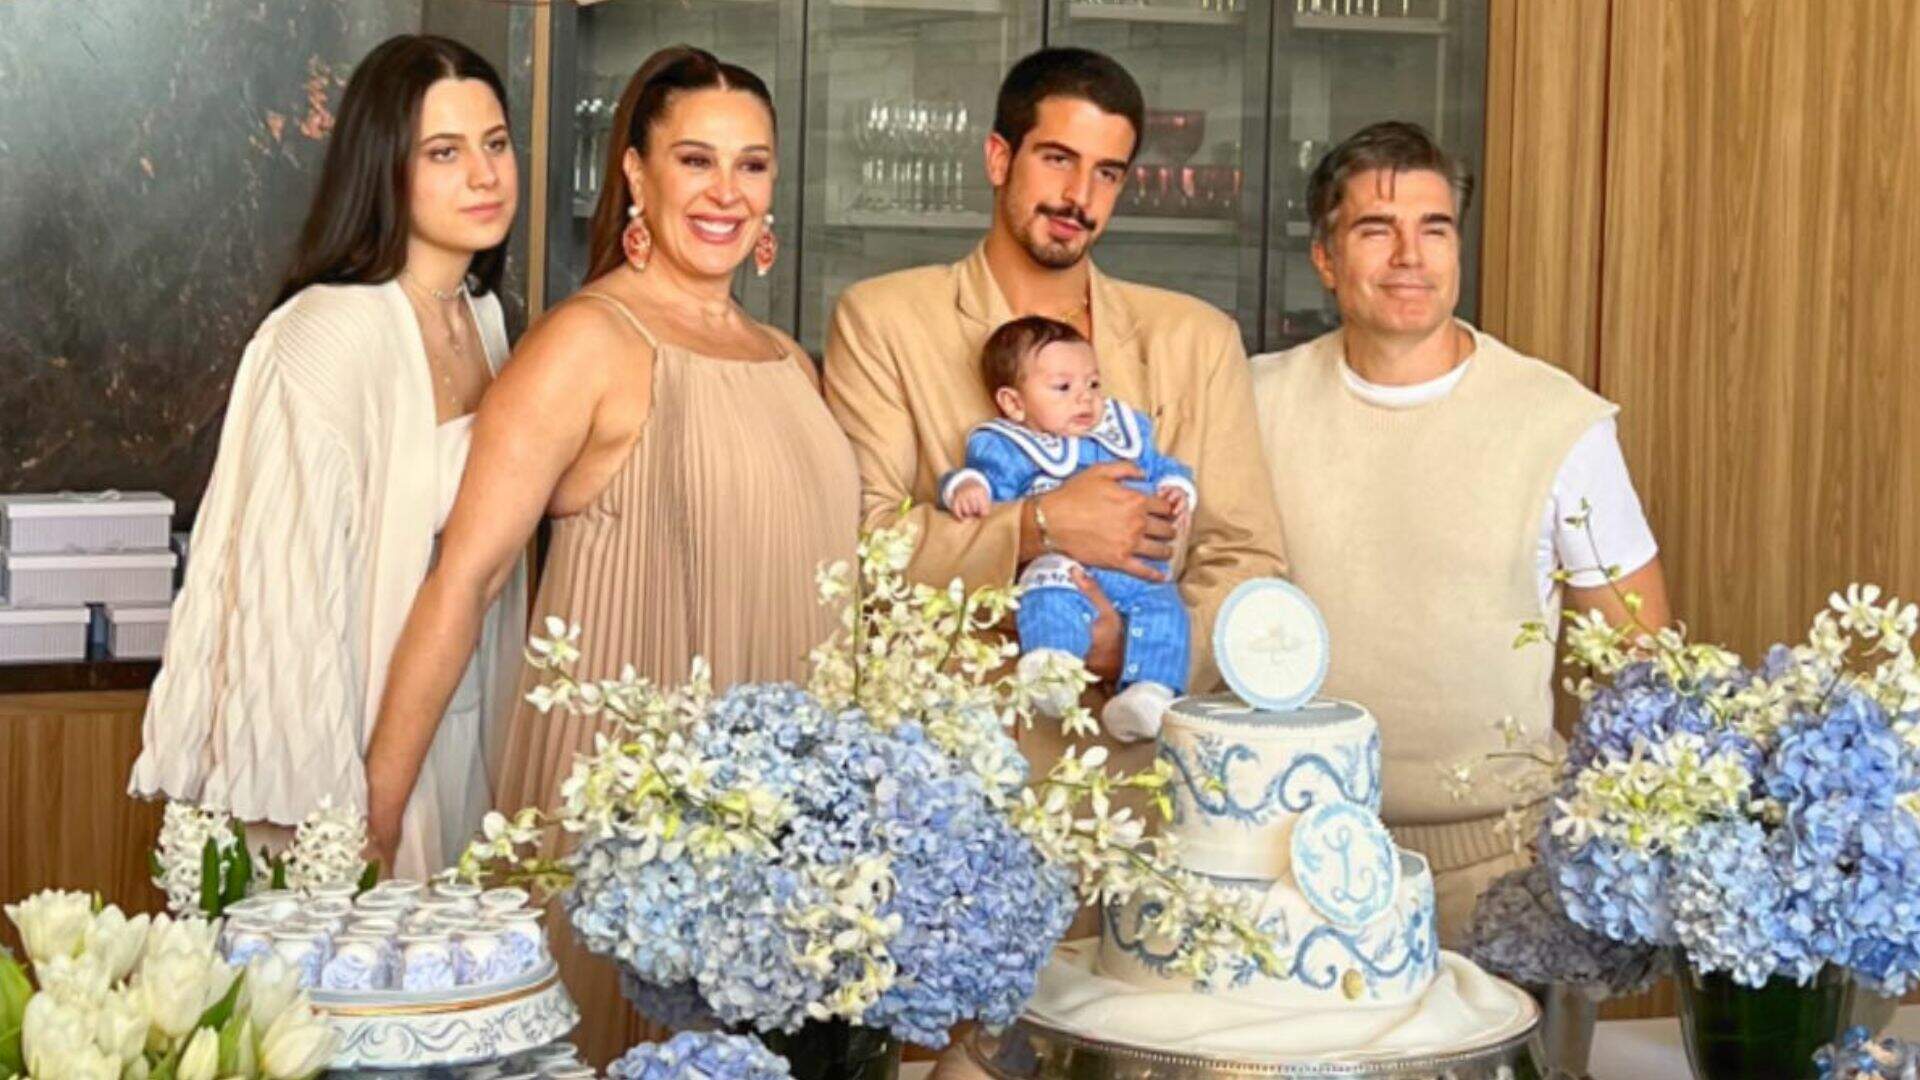 Enzo Celulari e Sophia Raia se tornam padrinhos do irmão caçula em cerimônia de batismo luxuosa - Metropolitana FM